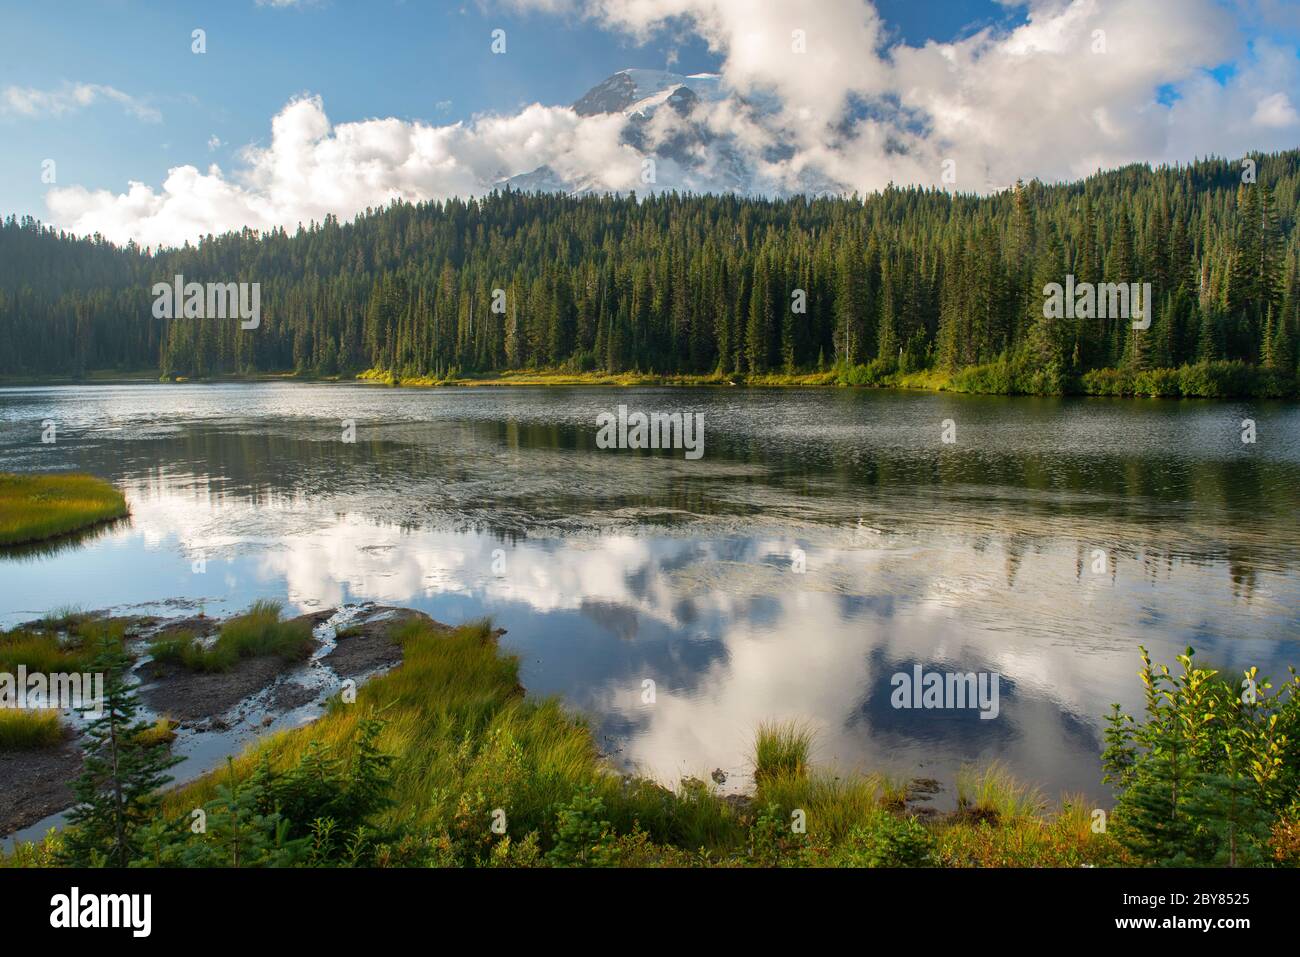 USA, West Coast, Washington, Mount Rainier National Park, Reflection lake Stock Photo